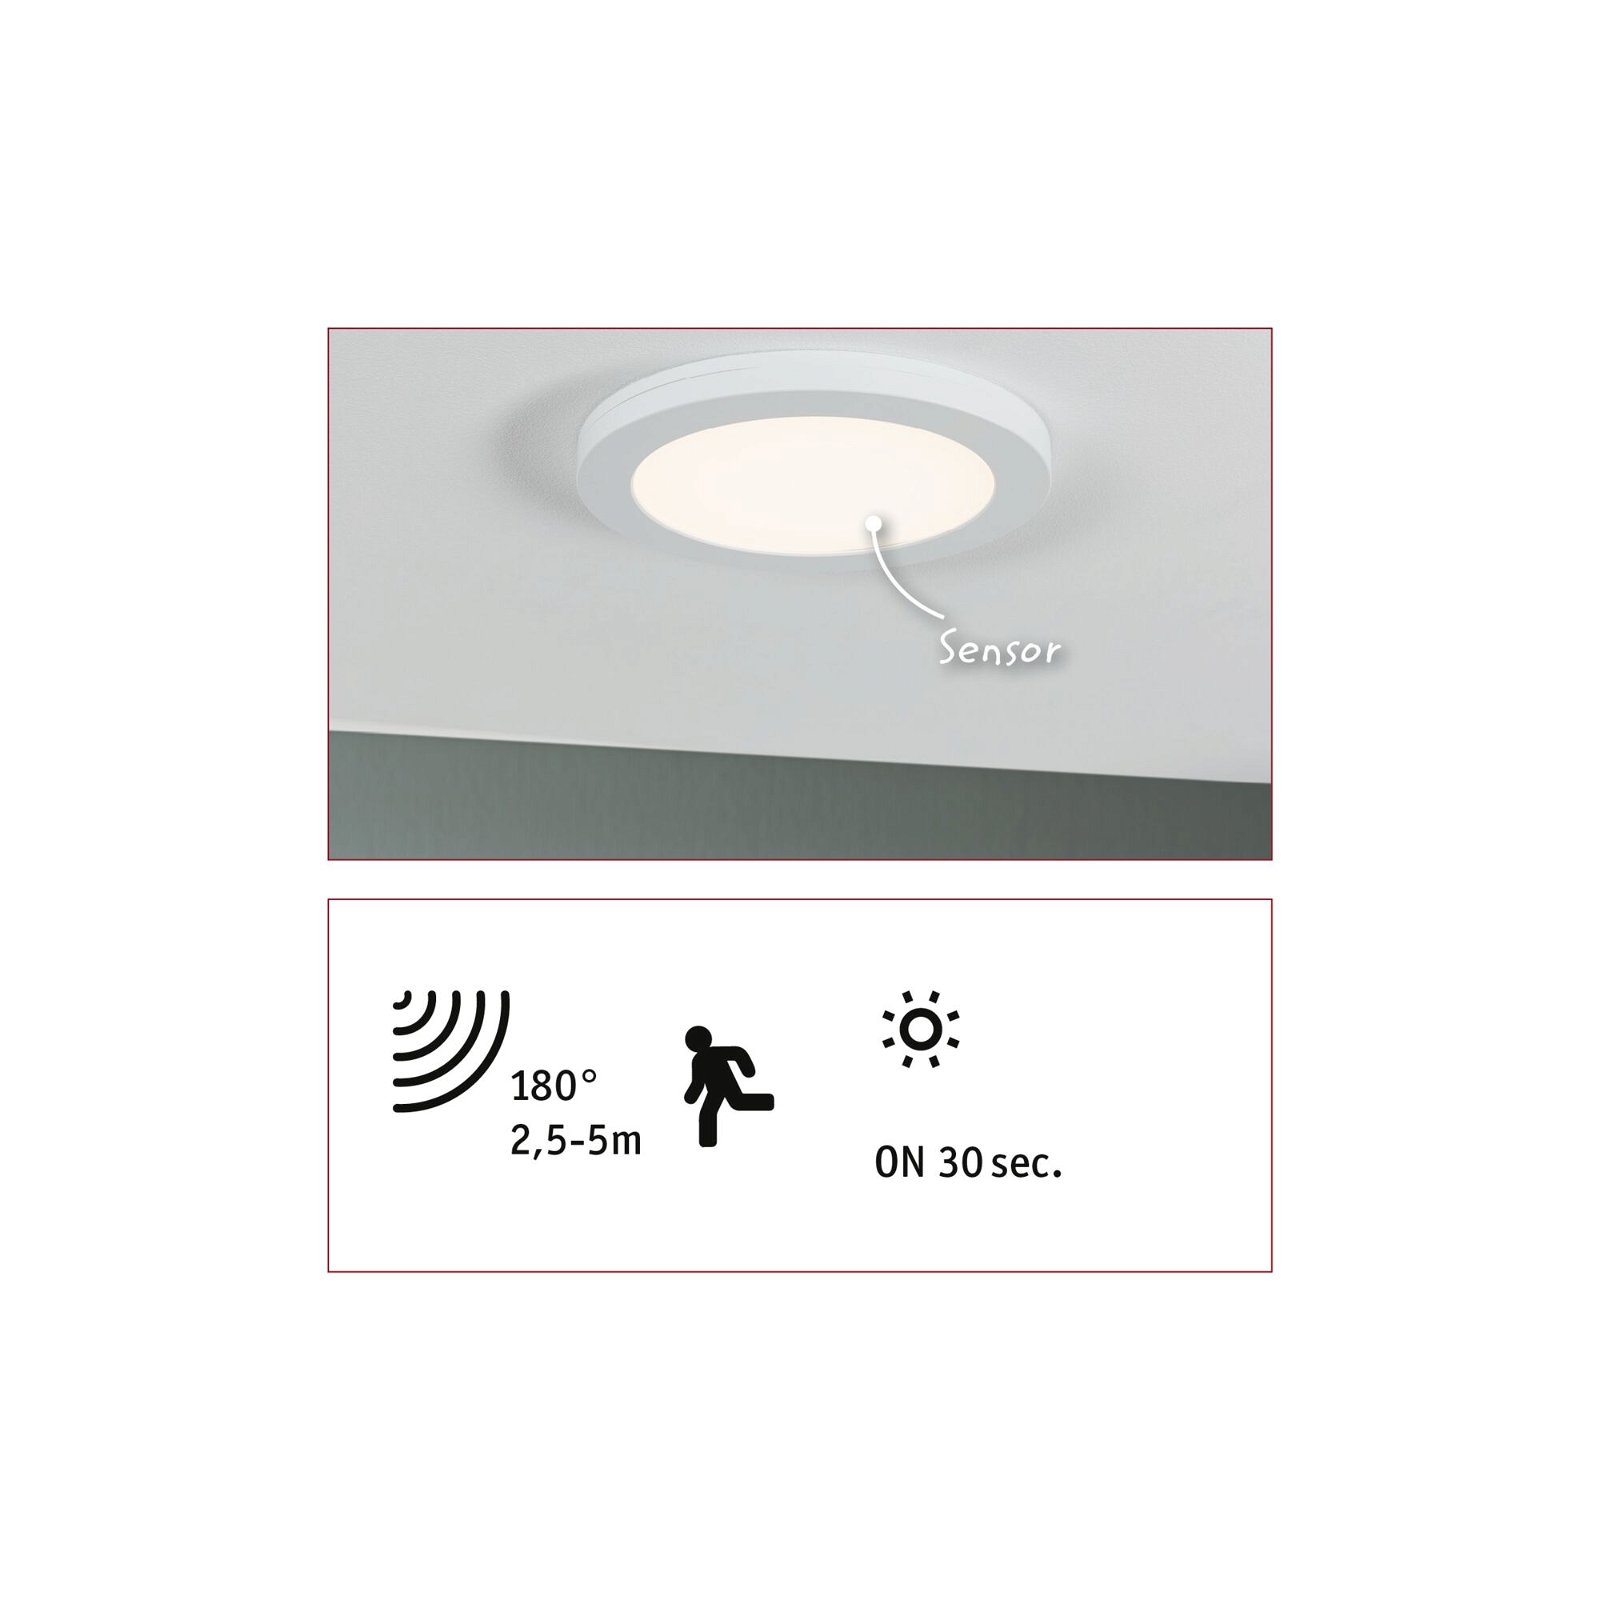 LED Einbaupanel 2in1 Cover-it rund 225mm 16,5W 1200lm 4000K Weiß matt